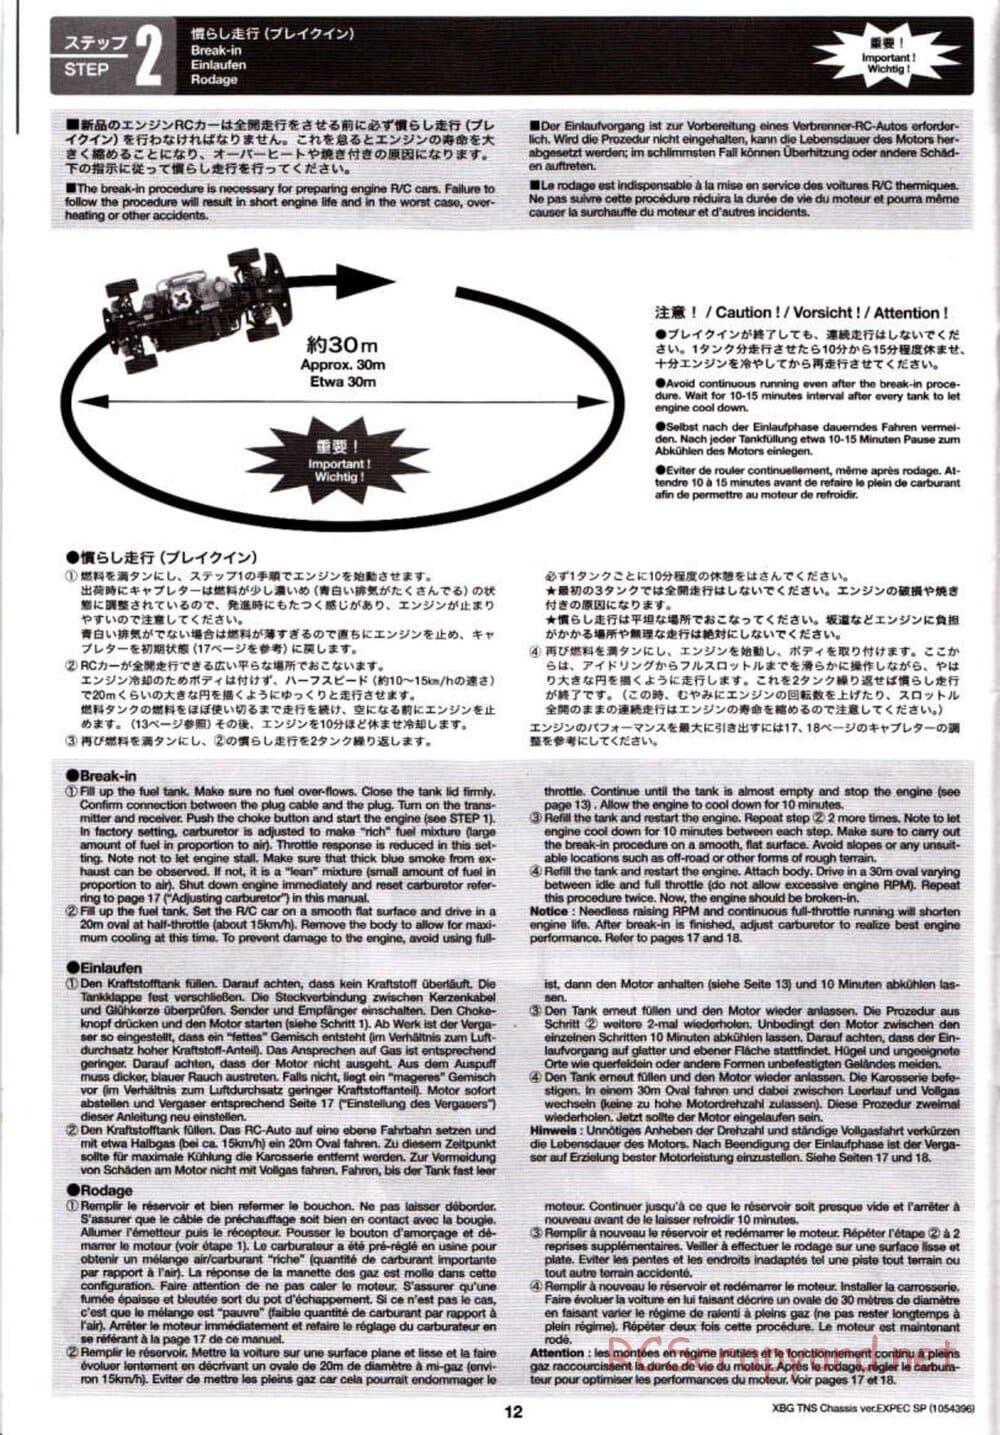 Tamiya - TNS Chassis - Manual - Page 12